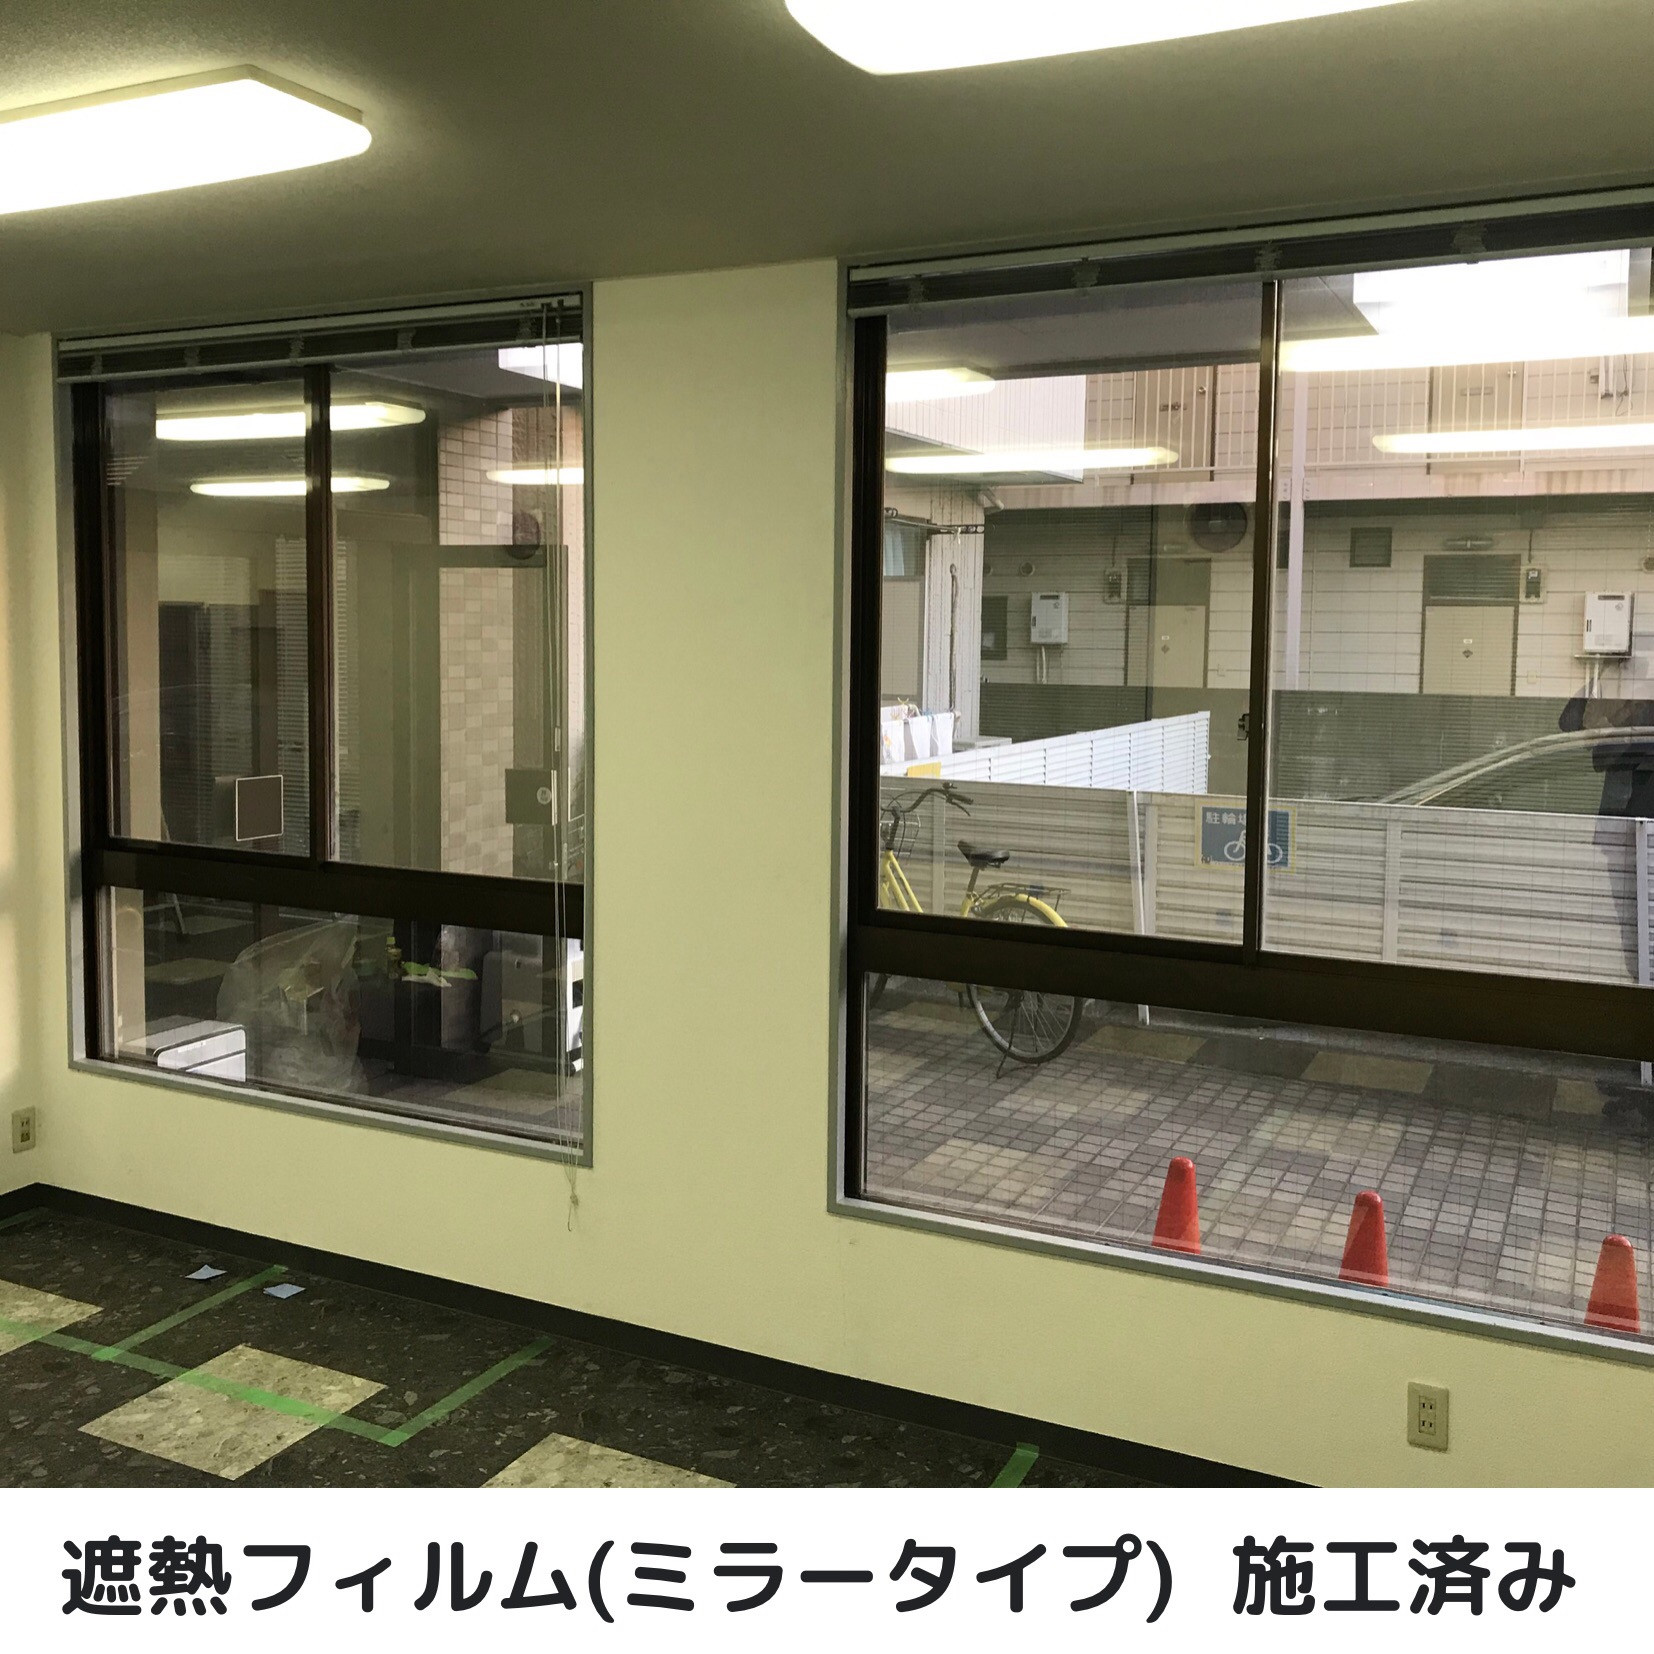 埼玉県越谷市で窓ガラスフィルム施工をお考えの方